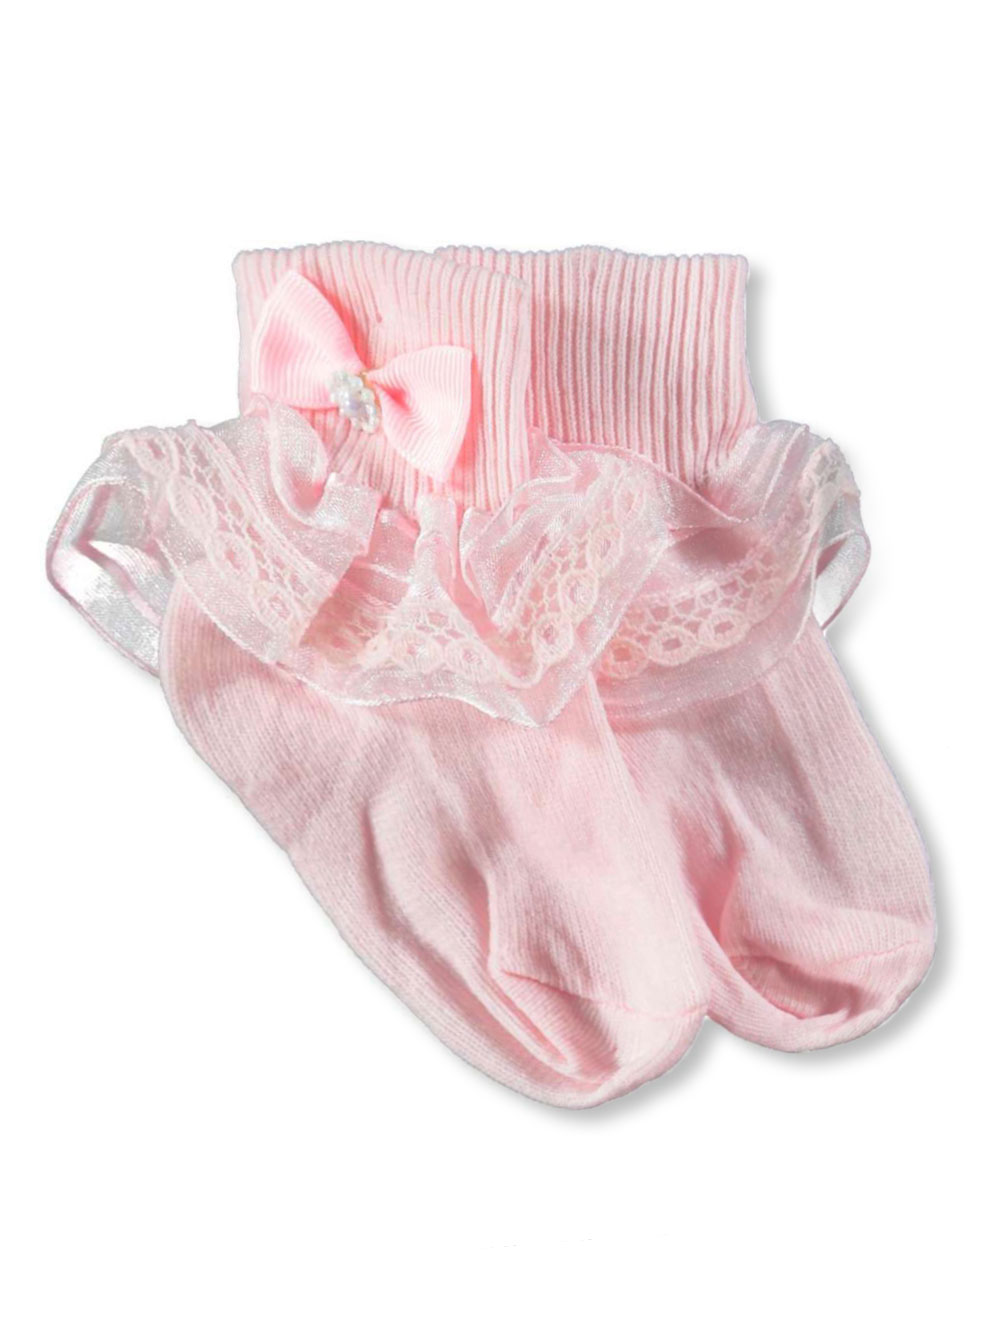 Pink and White Underwear